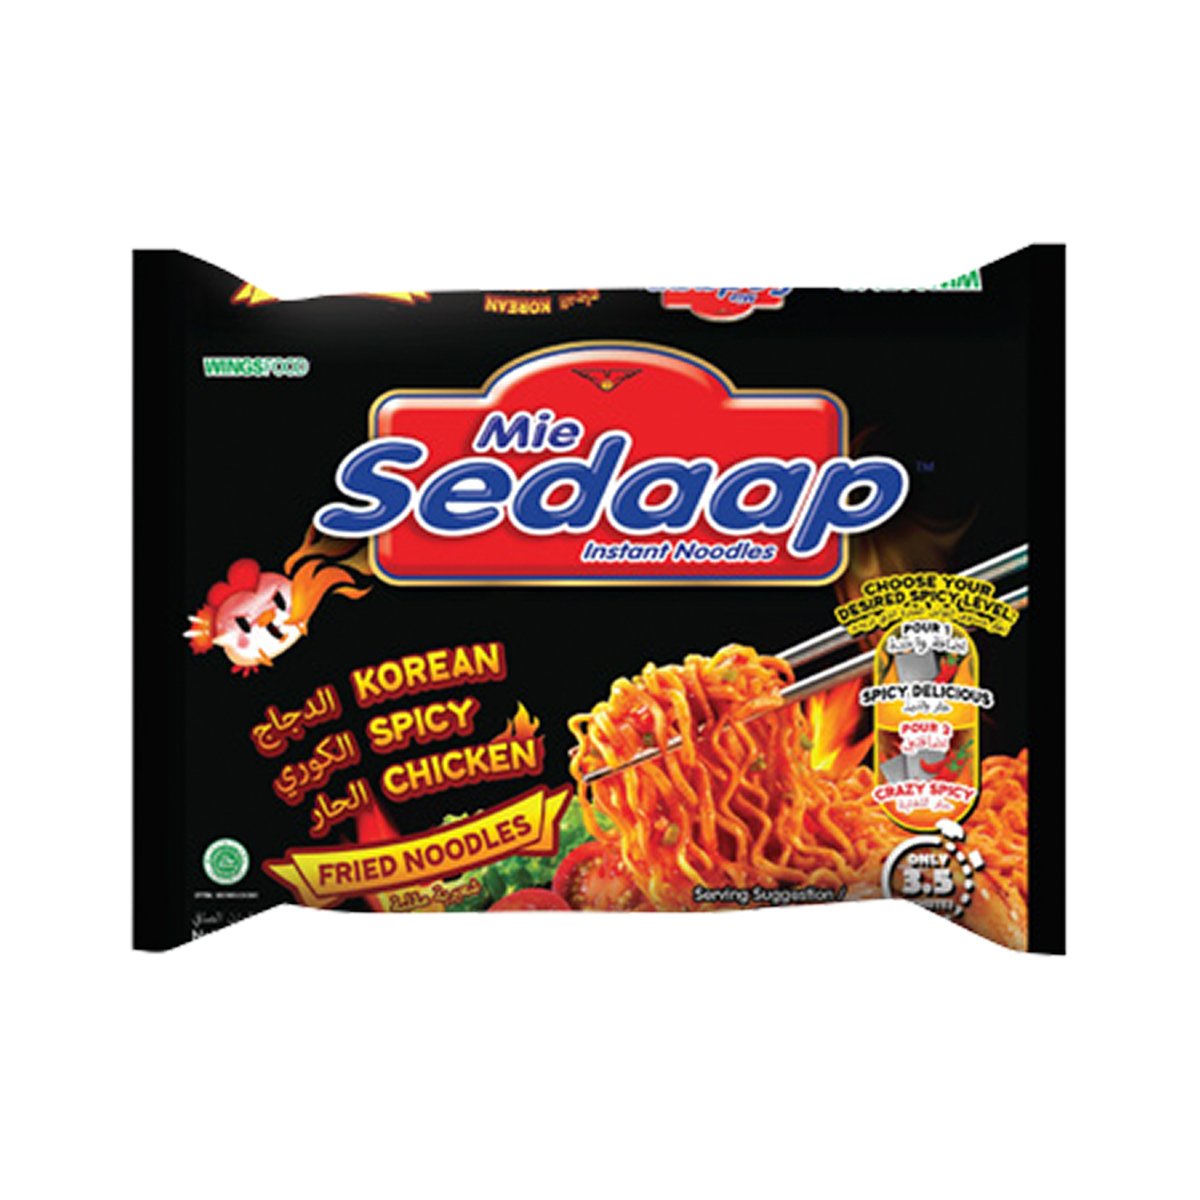 Mie Sedaap Korean Spicy Chicken Noodles 5 X 87 G Online At Best Price